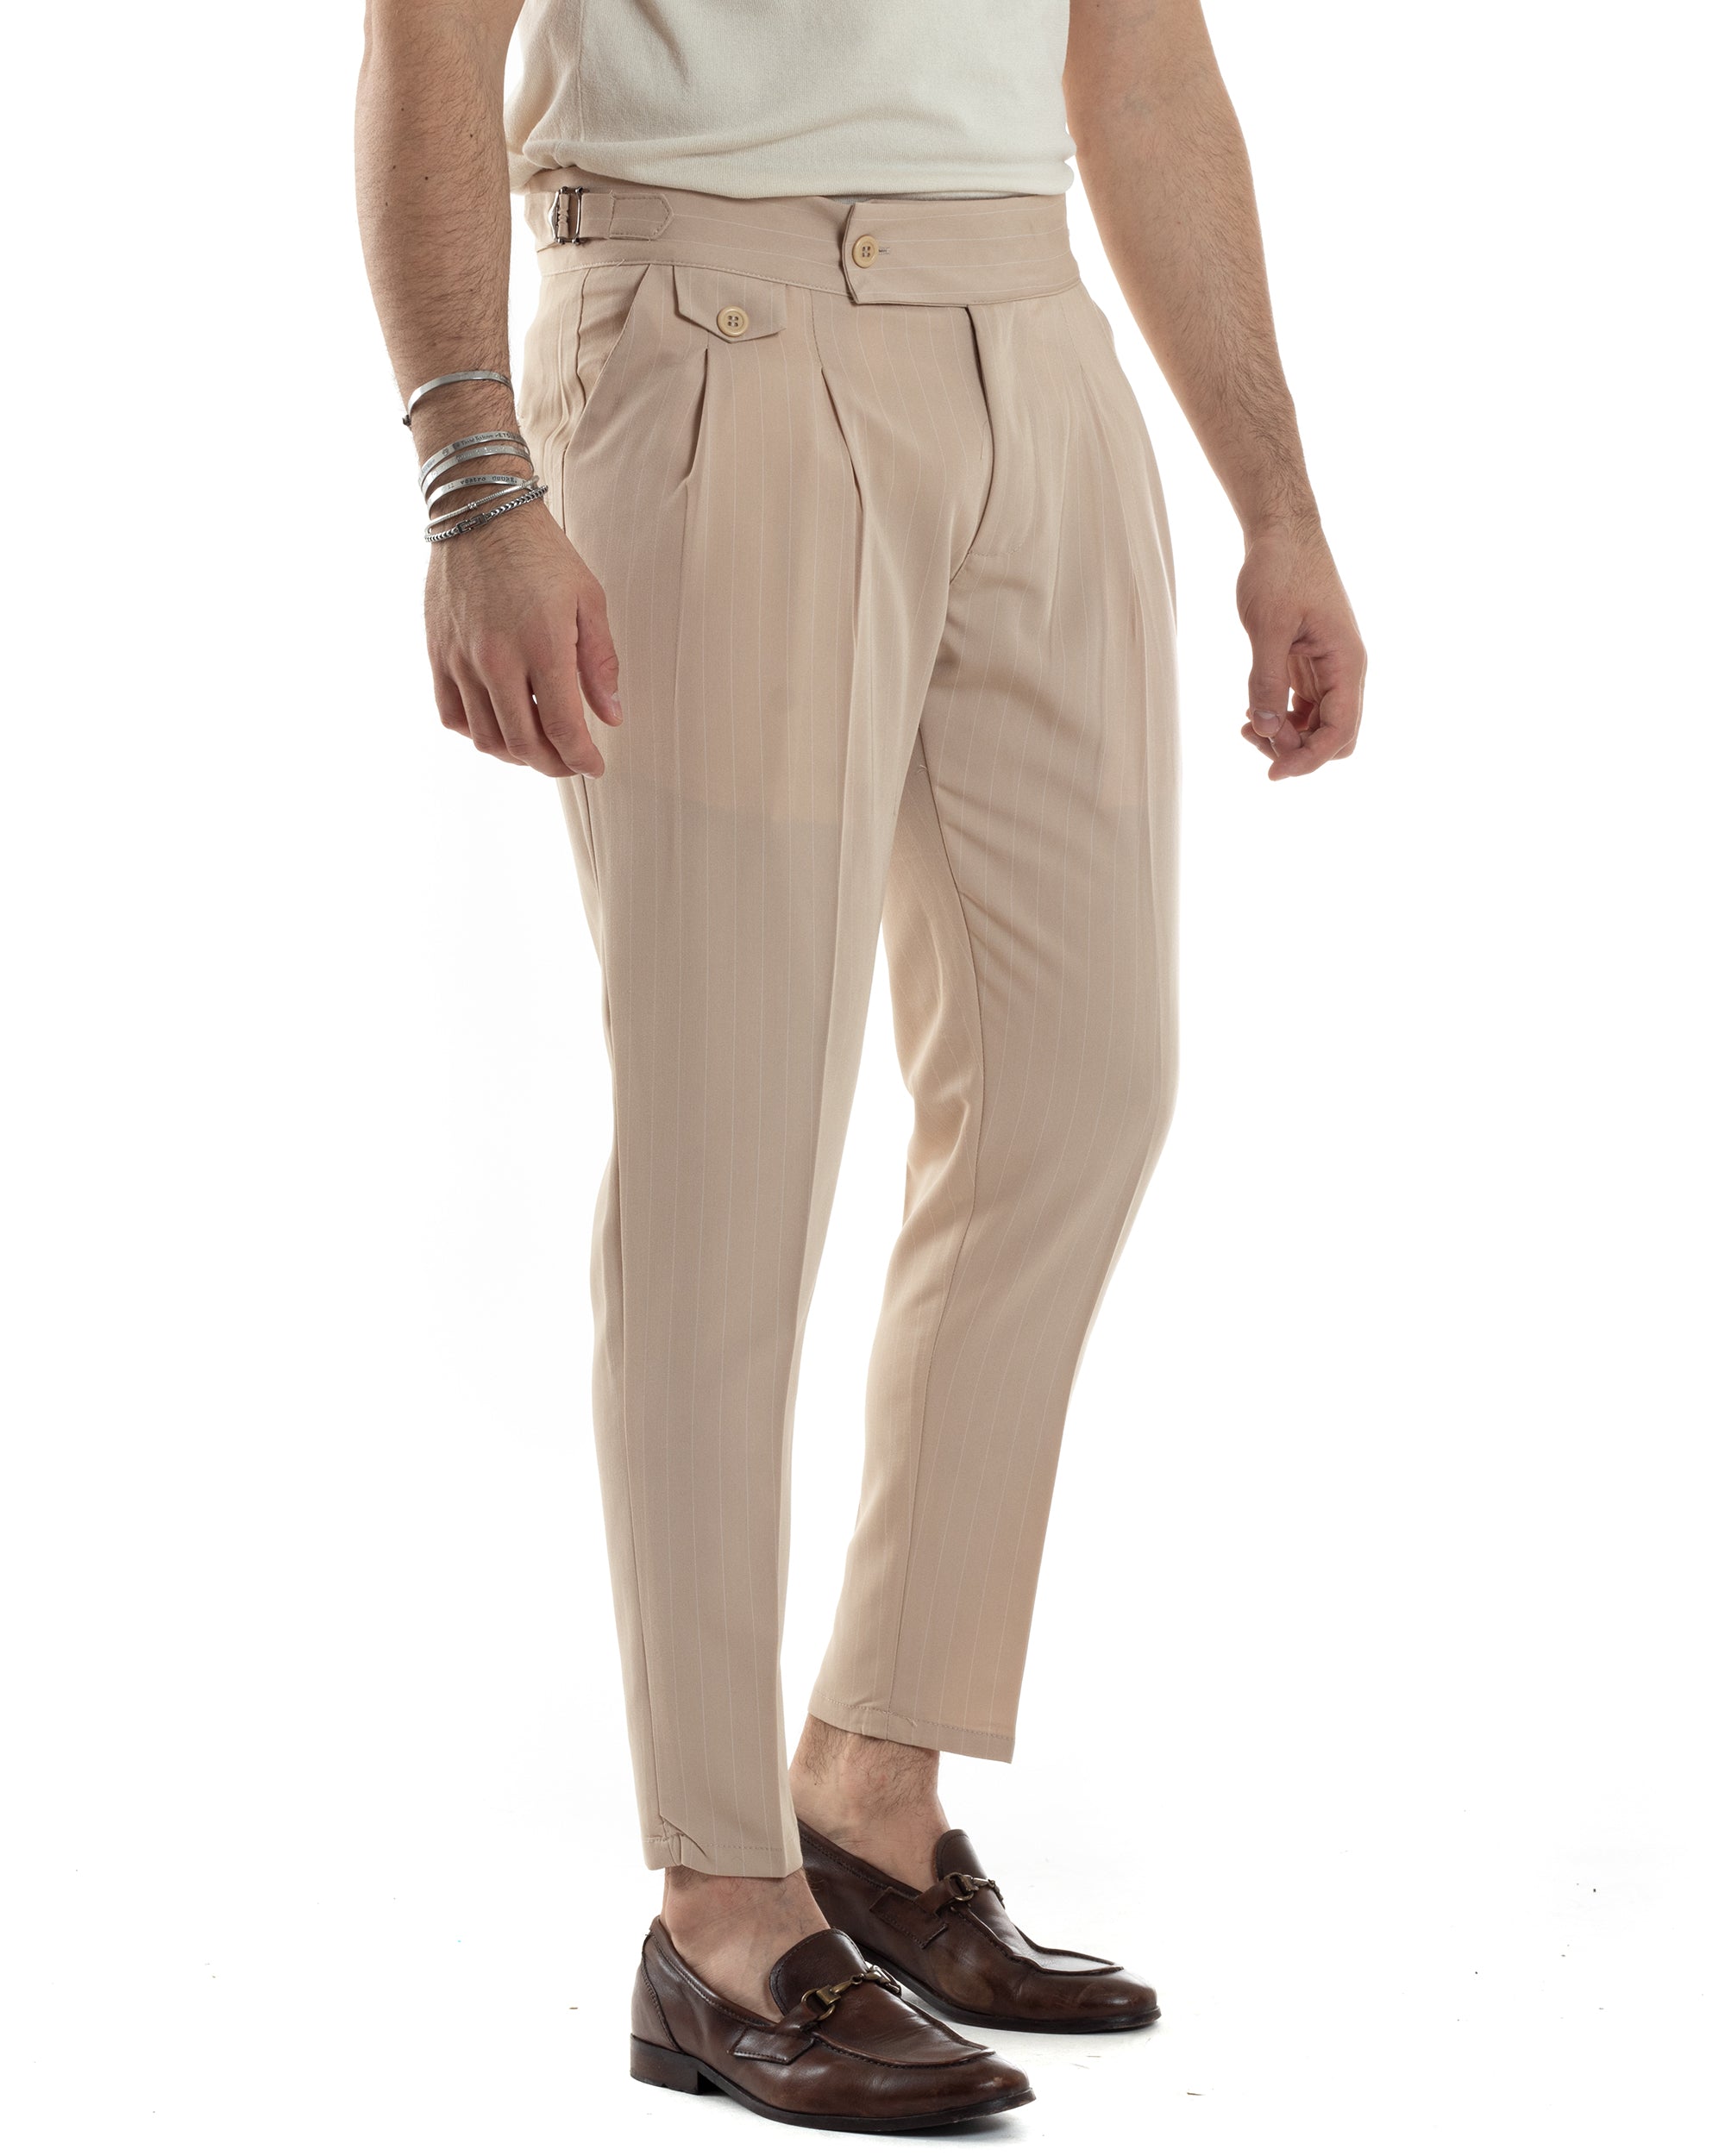 Pantaloni Uomo Classico Gessato Rigato Vita Alta Pinces Abbottonatura Allungata Fibbia Casual Beige GIOSAL-P6087A